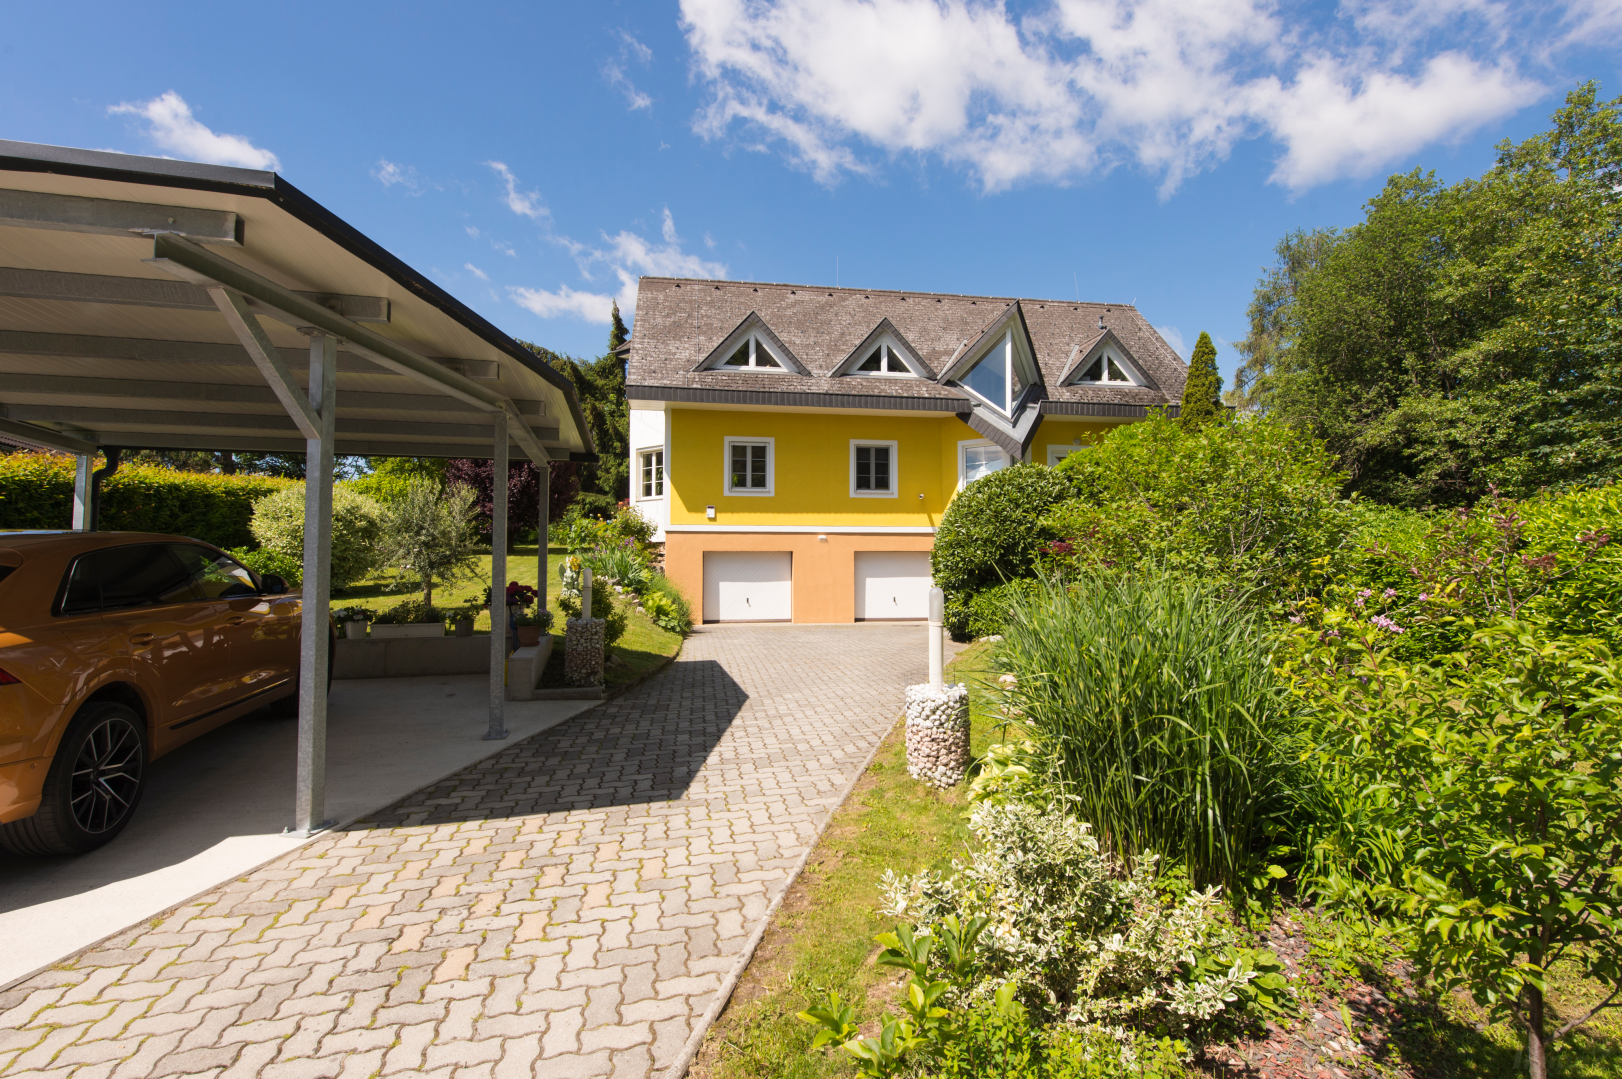 Haus zum Kaufen: Kogelbuch, 8302 Nestelbach bei Graz - Einfamilienhaus Graz Umgebung 180